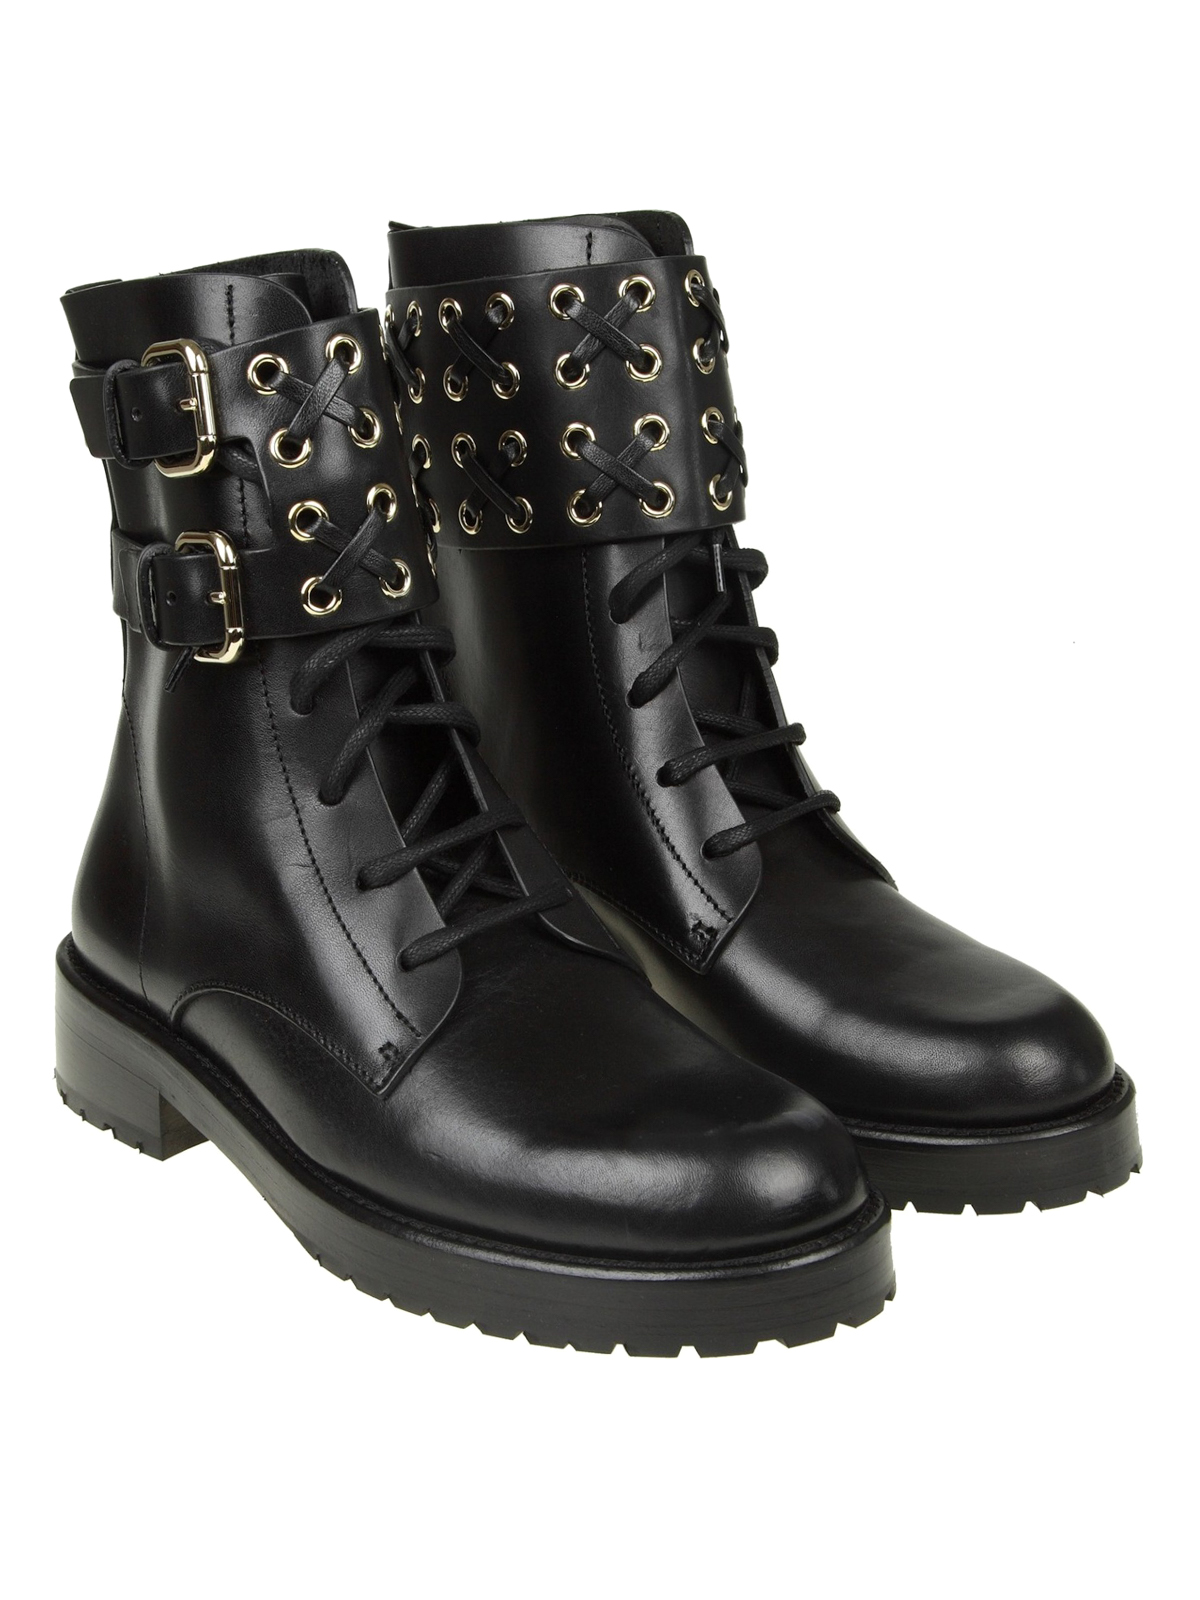 black calfskin combat boots - boots 